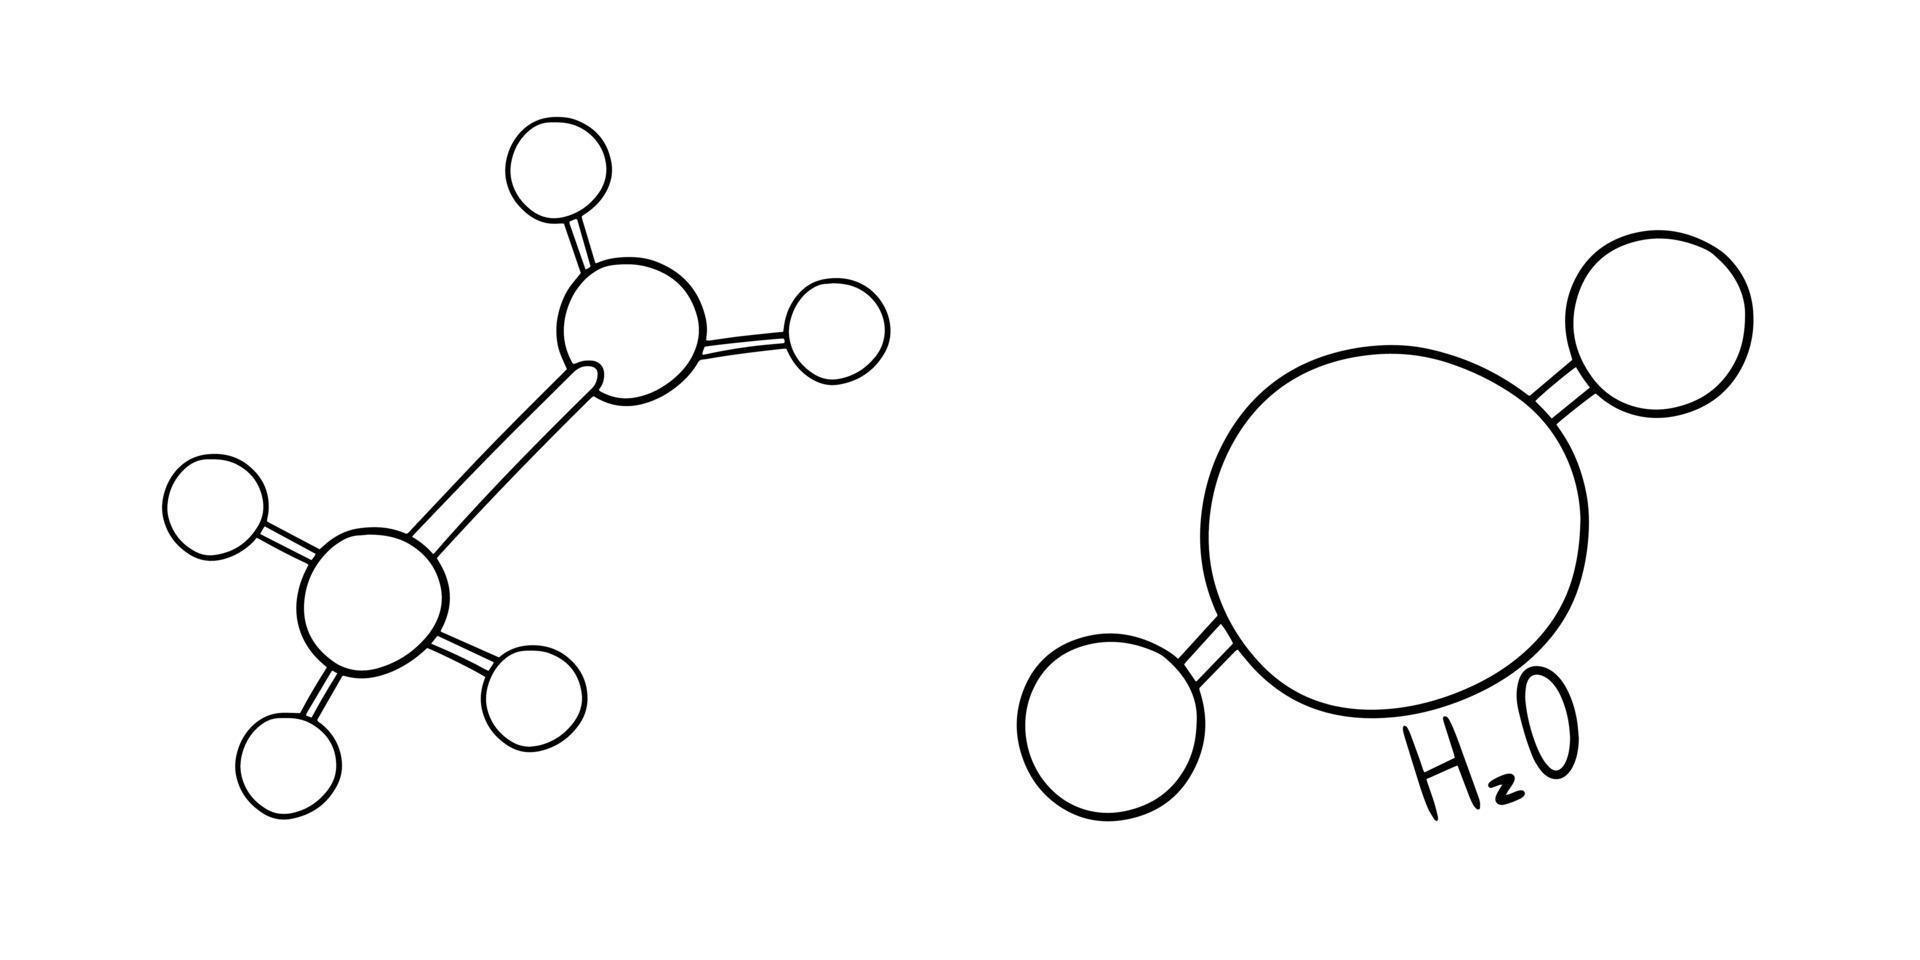 imagem monocromática, diagrama simples da estrutura da molécula, ilustração vetorial em estilo cartoon em um fundo branco vetor